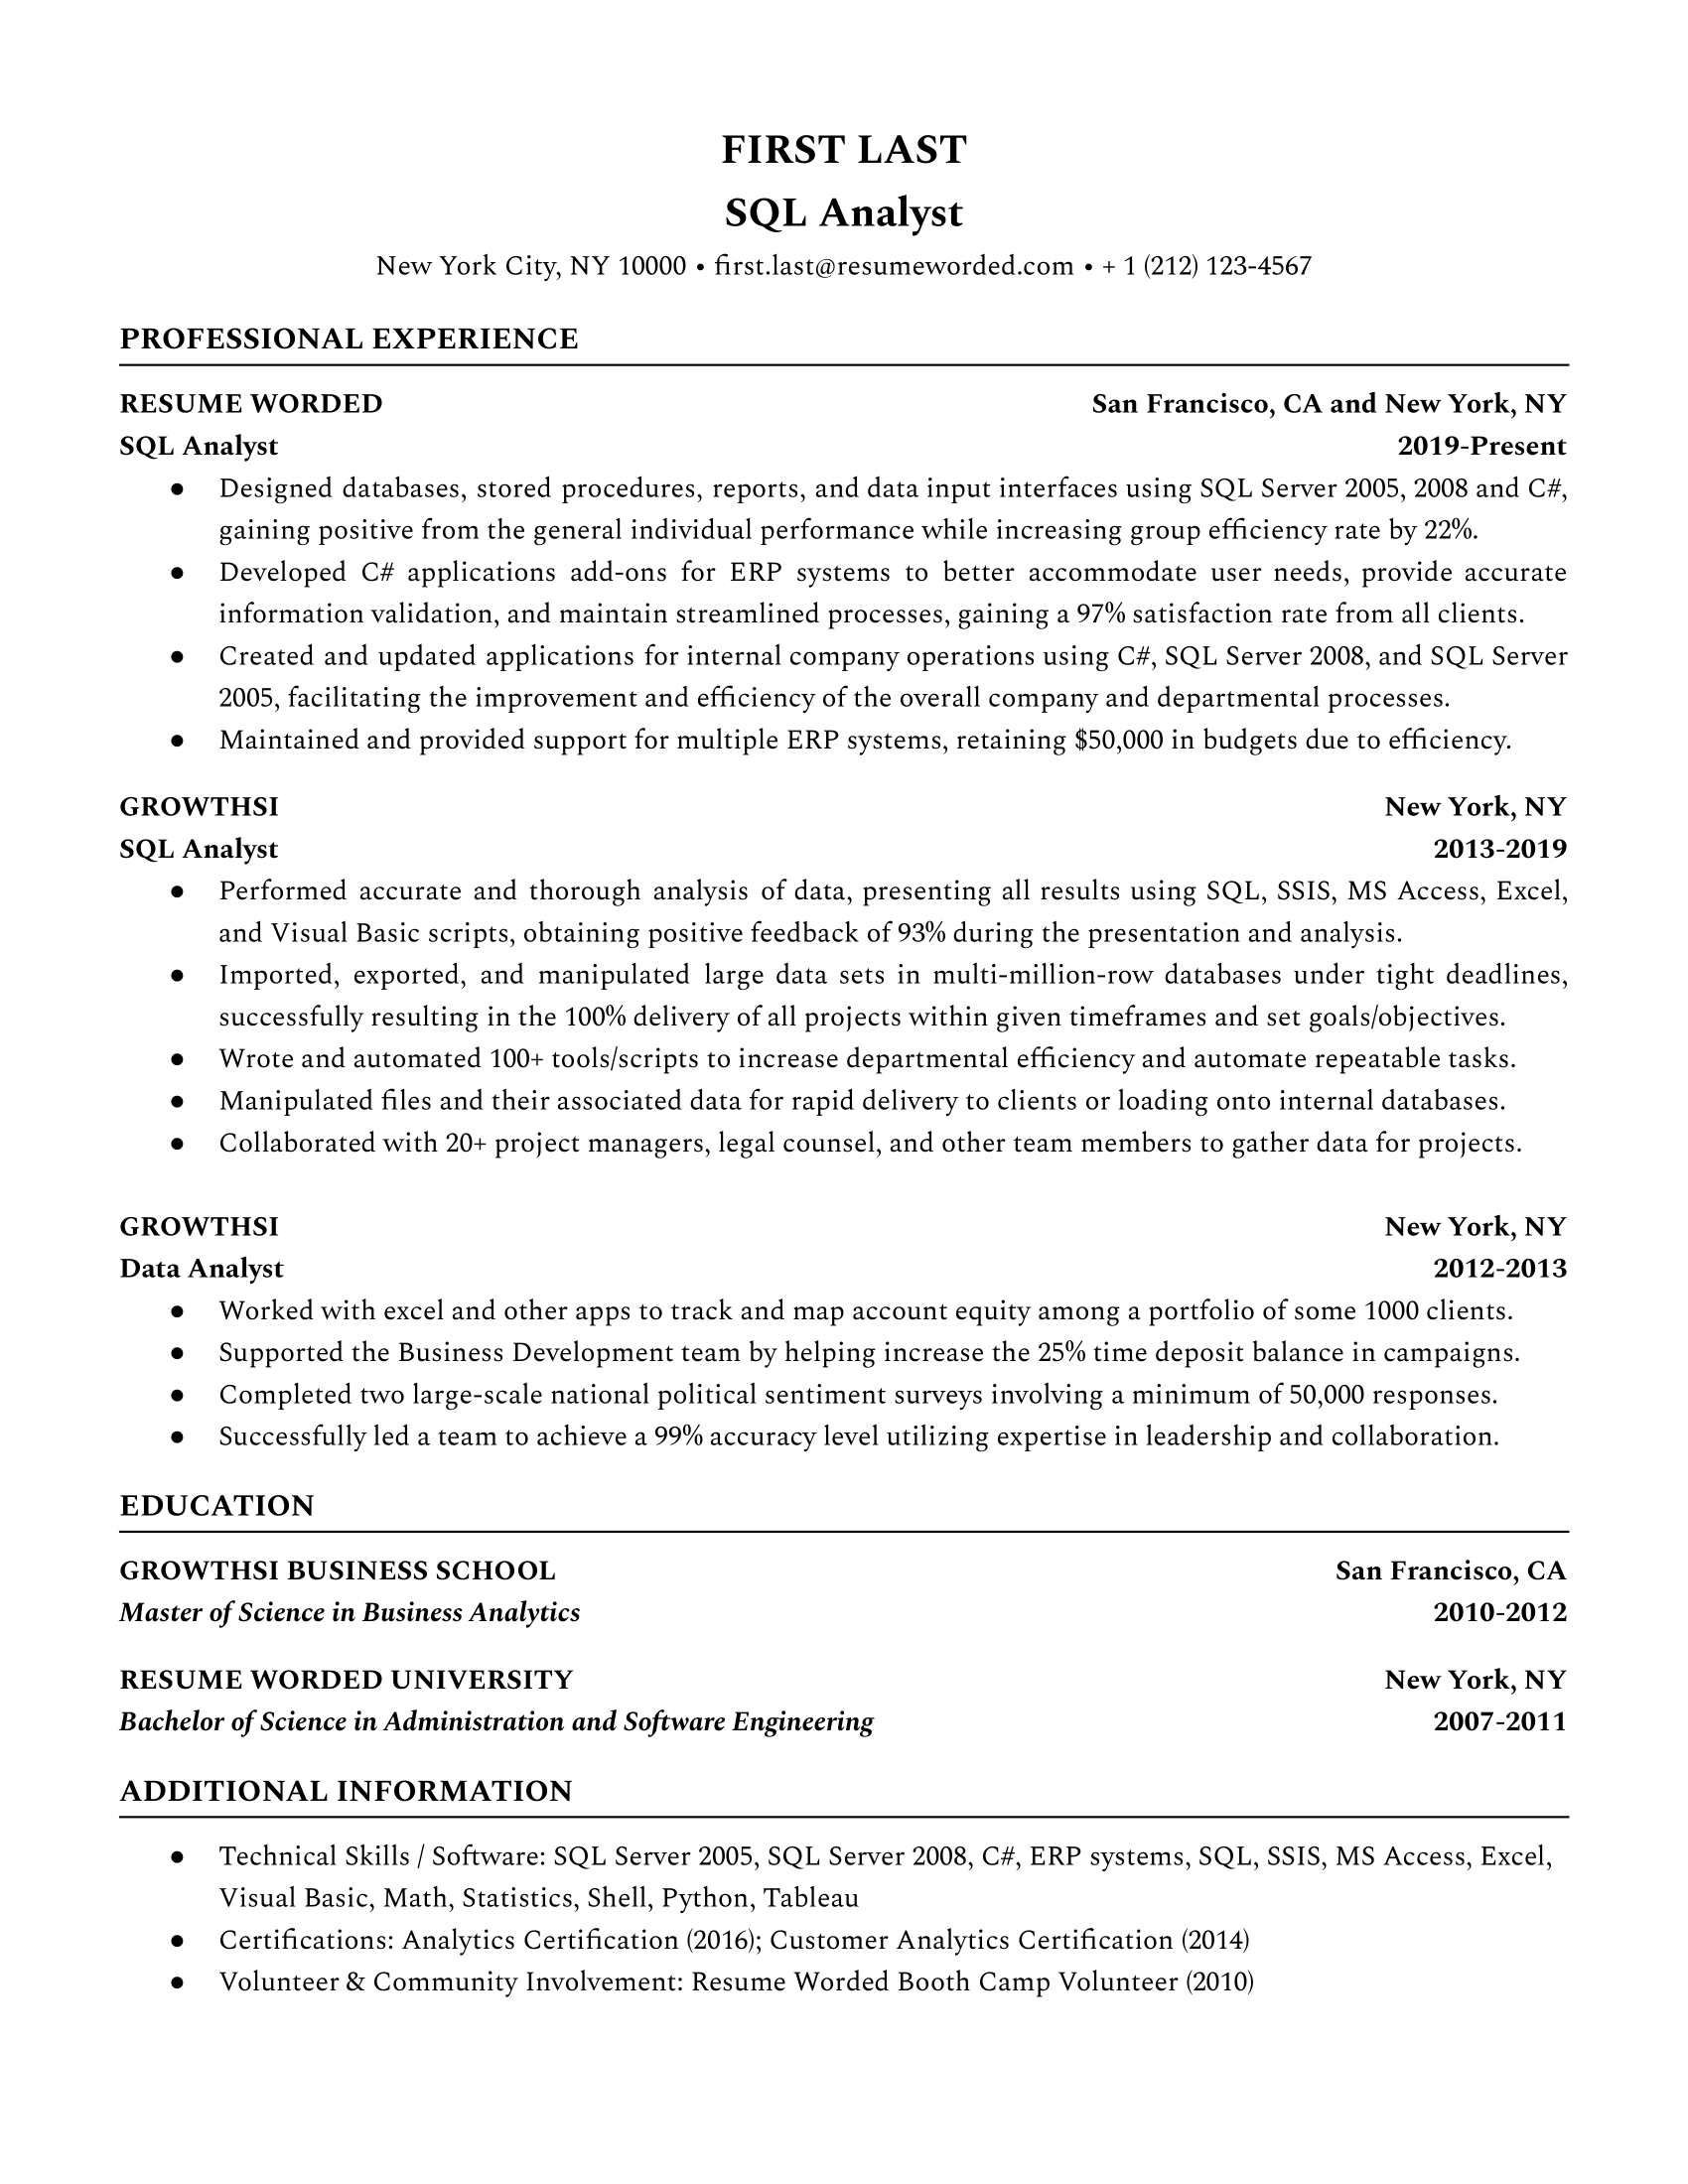 Understanding resume